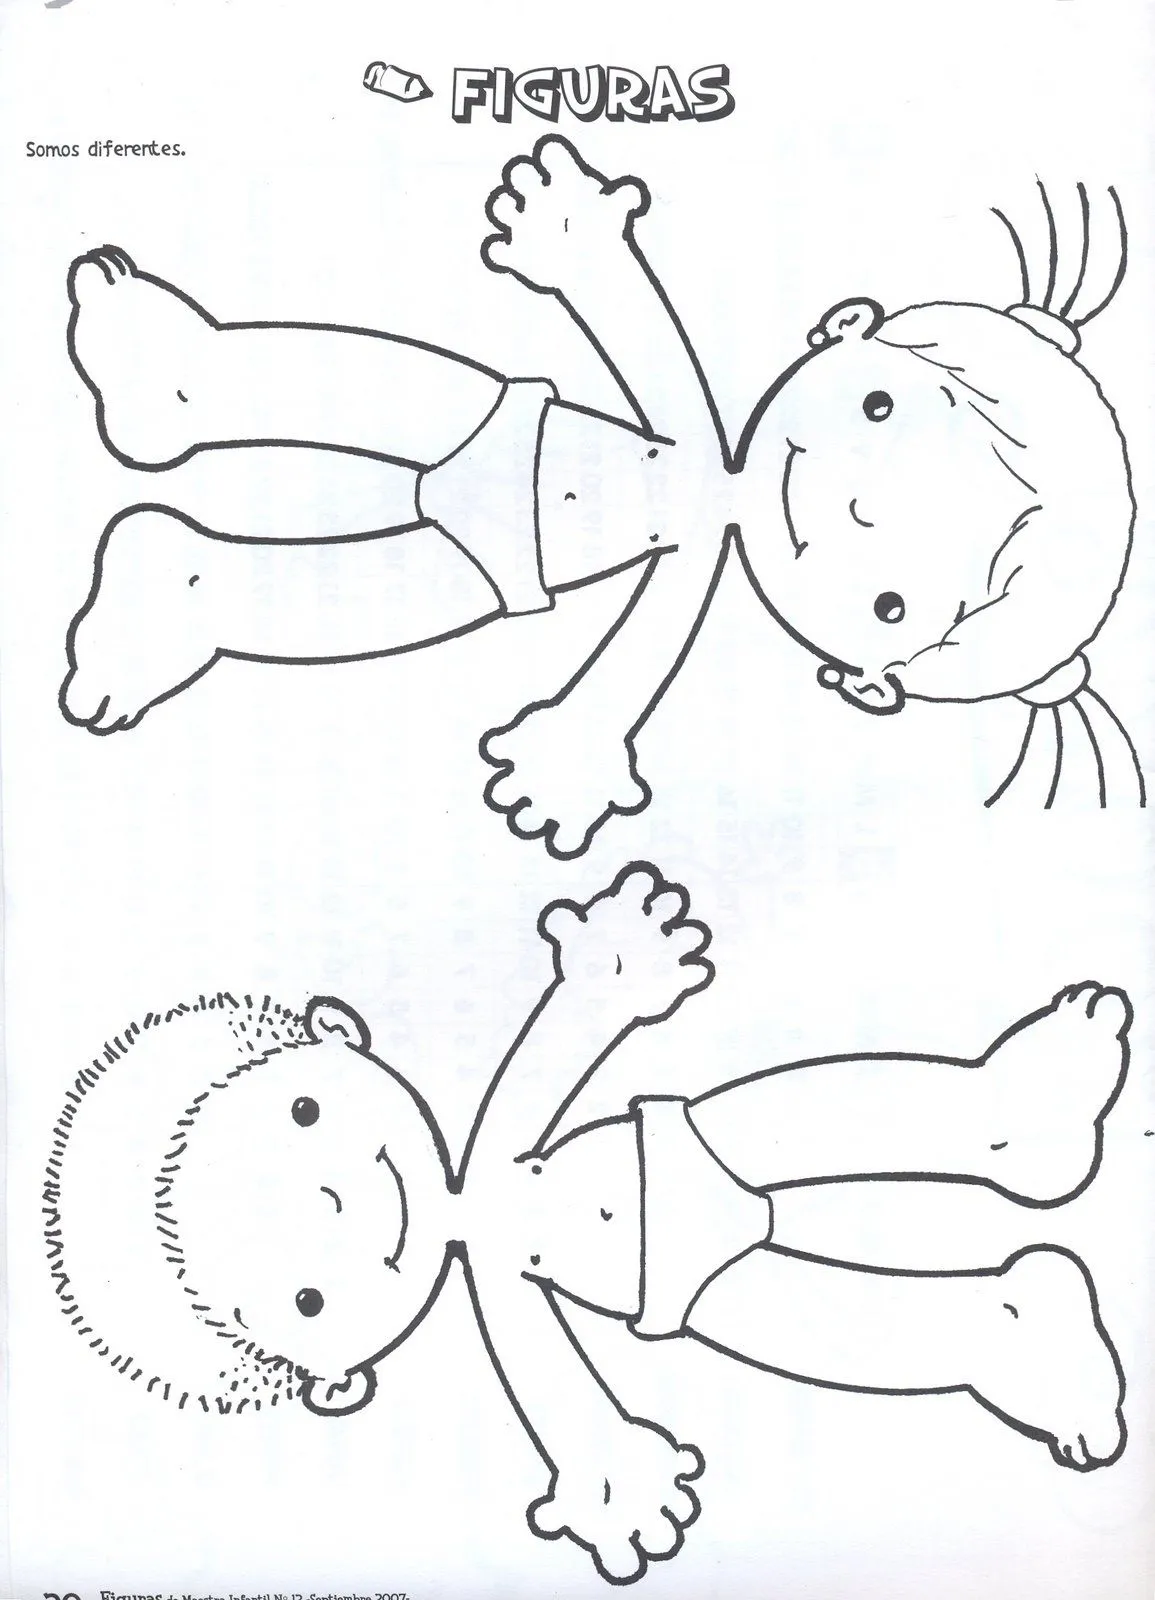 Imagenes del cuerpo humano y sus partes para niños - Imagui